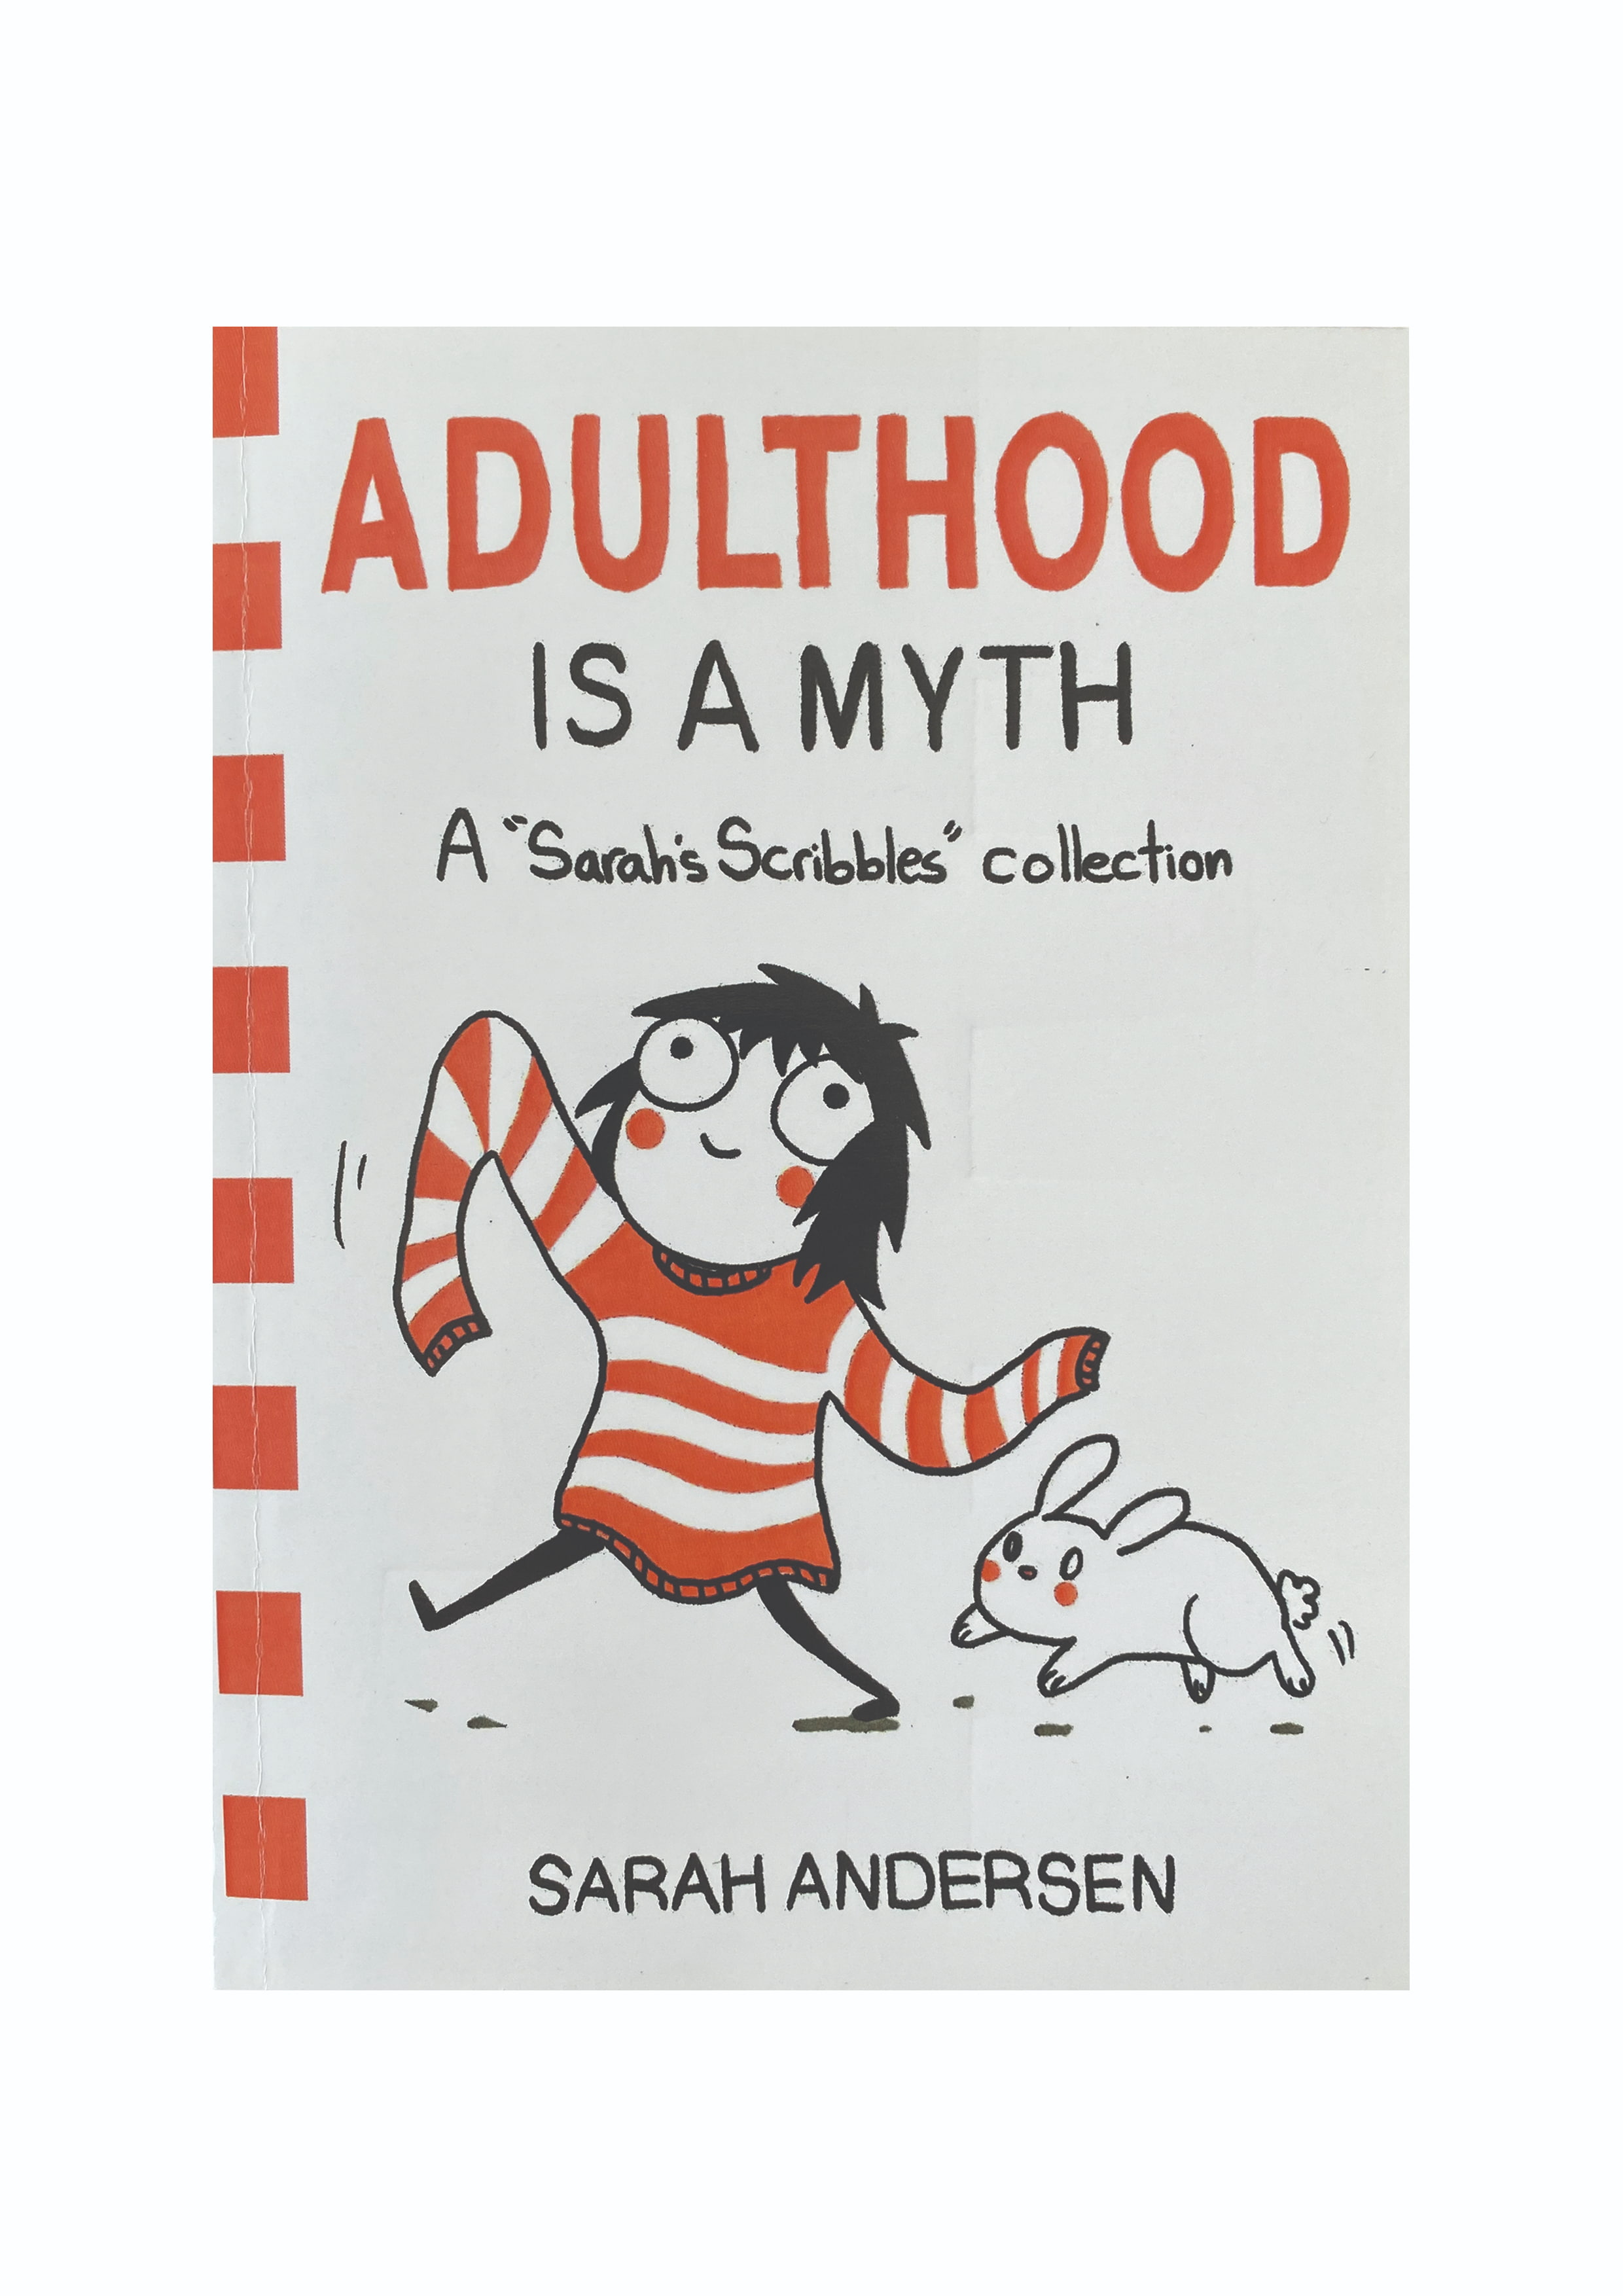 Adulthood is a MYTH